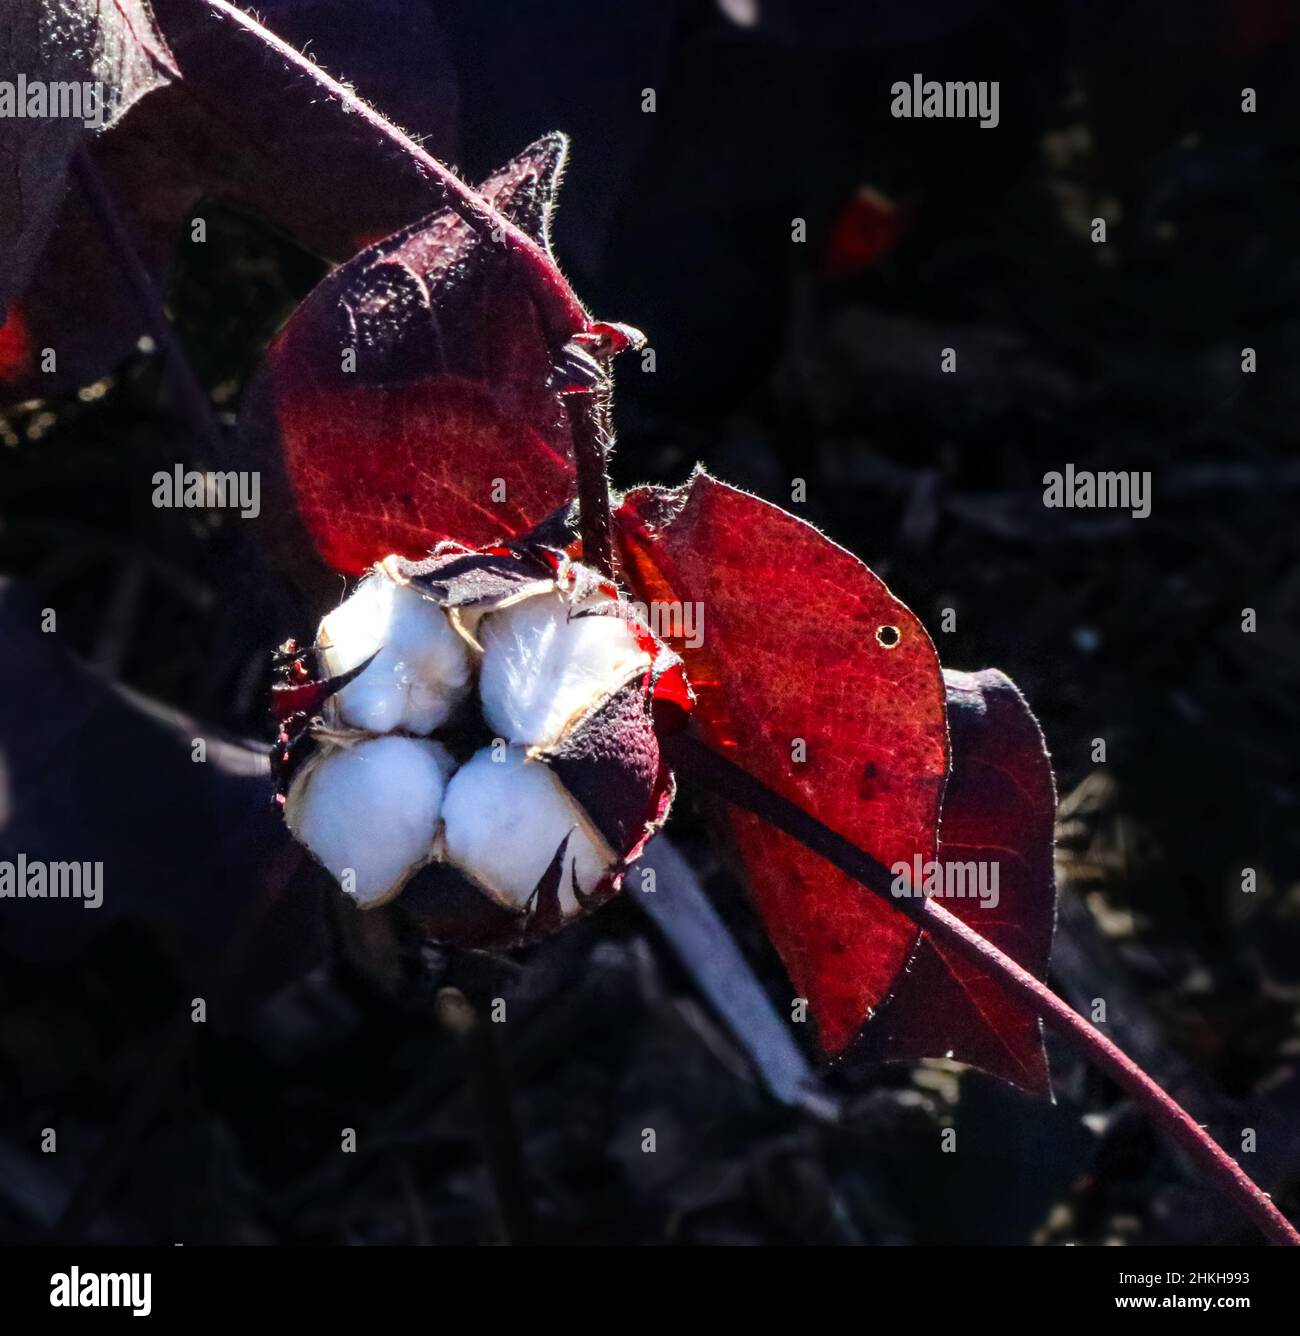 Baumwollpflanze mit seinem schützenden boll offen, der die Baumwolle beim Wachstum zeigt - Gossypium aus der Malvenfamilie Malvaceae - mit roten Blättern gegen dunkle Ba Stockfoto